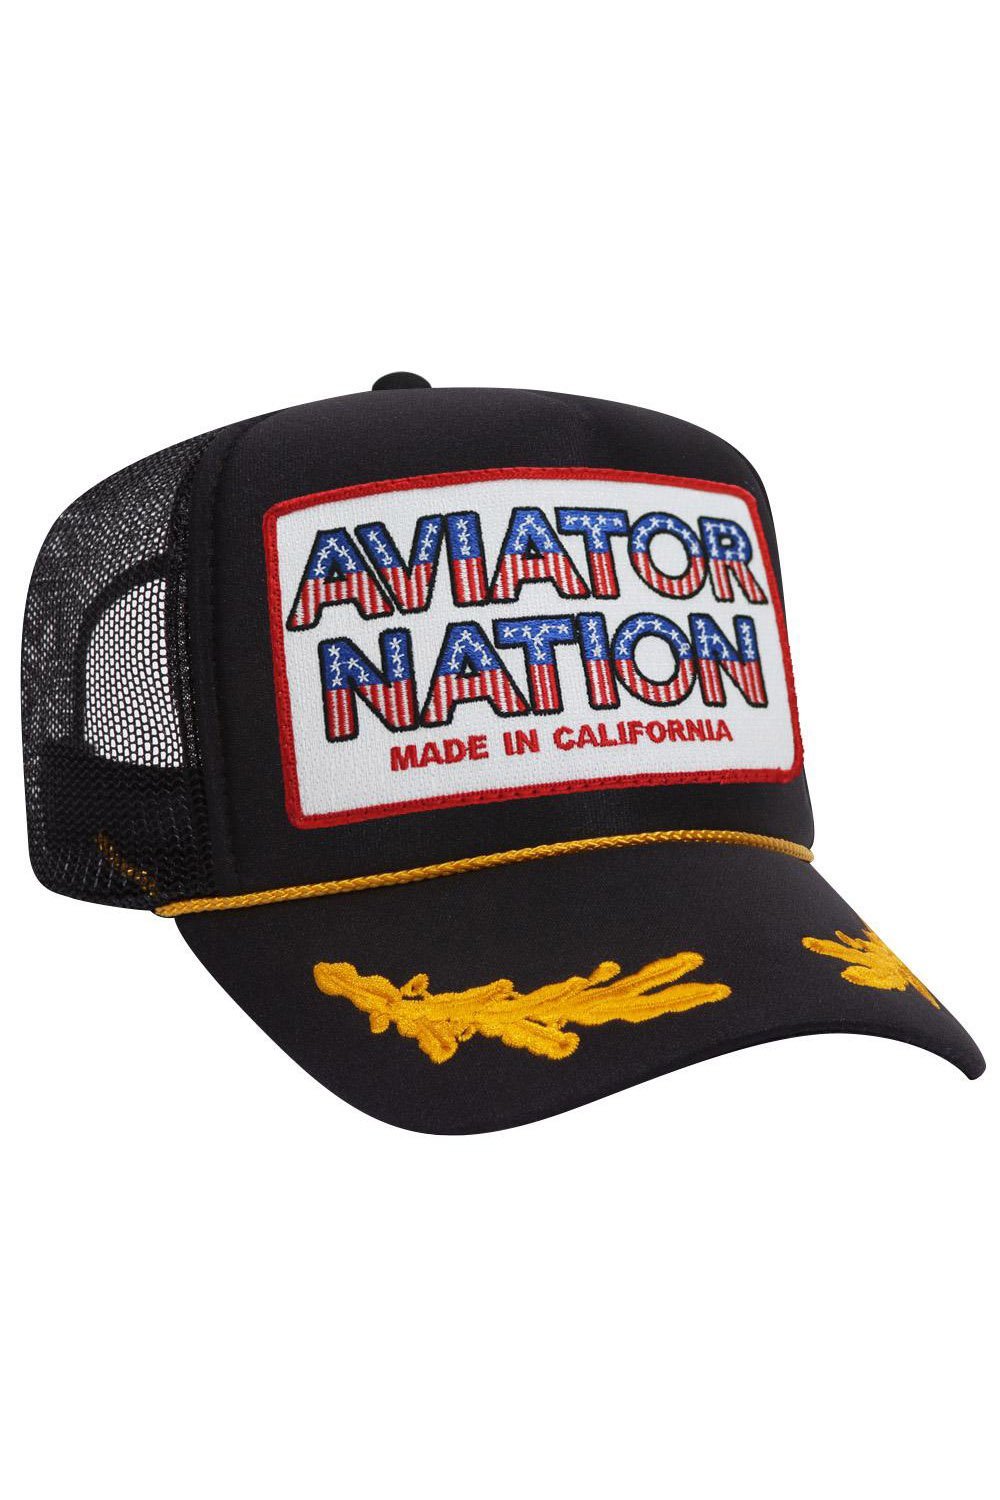 AVIATOR NATION USA PATRIOTIC VINTAGE TRUCKER HAT HATS Aviator Nation OS BLACK LEAF 